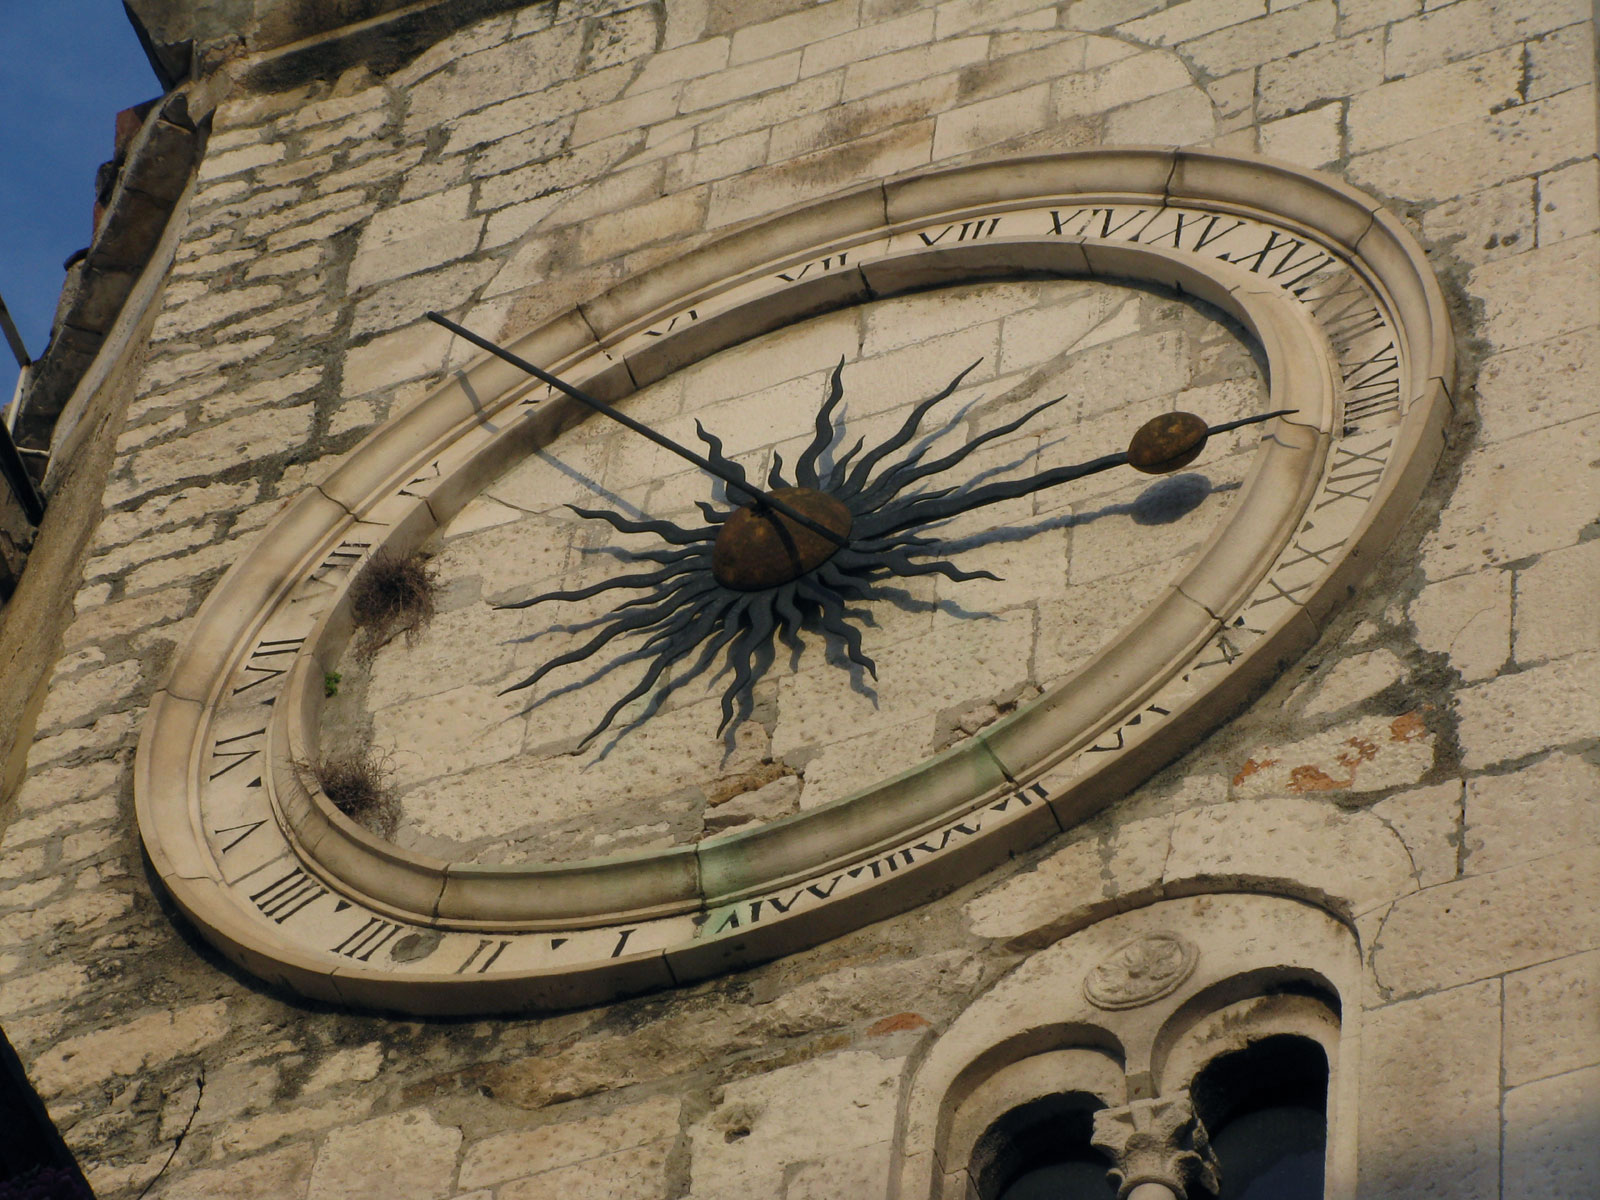 Clock on Pjaca square in Split